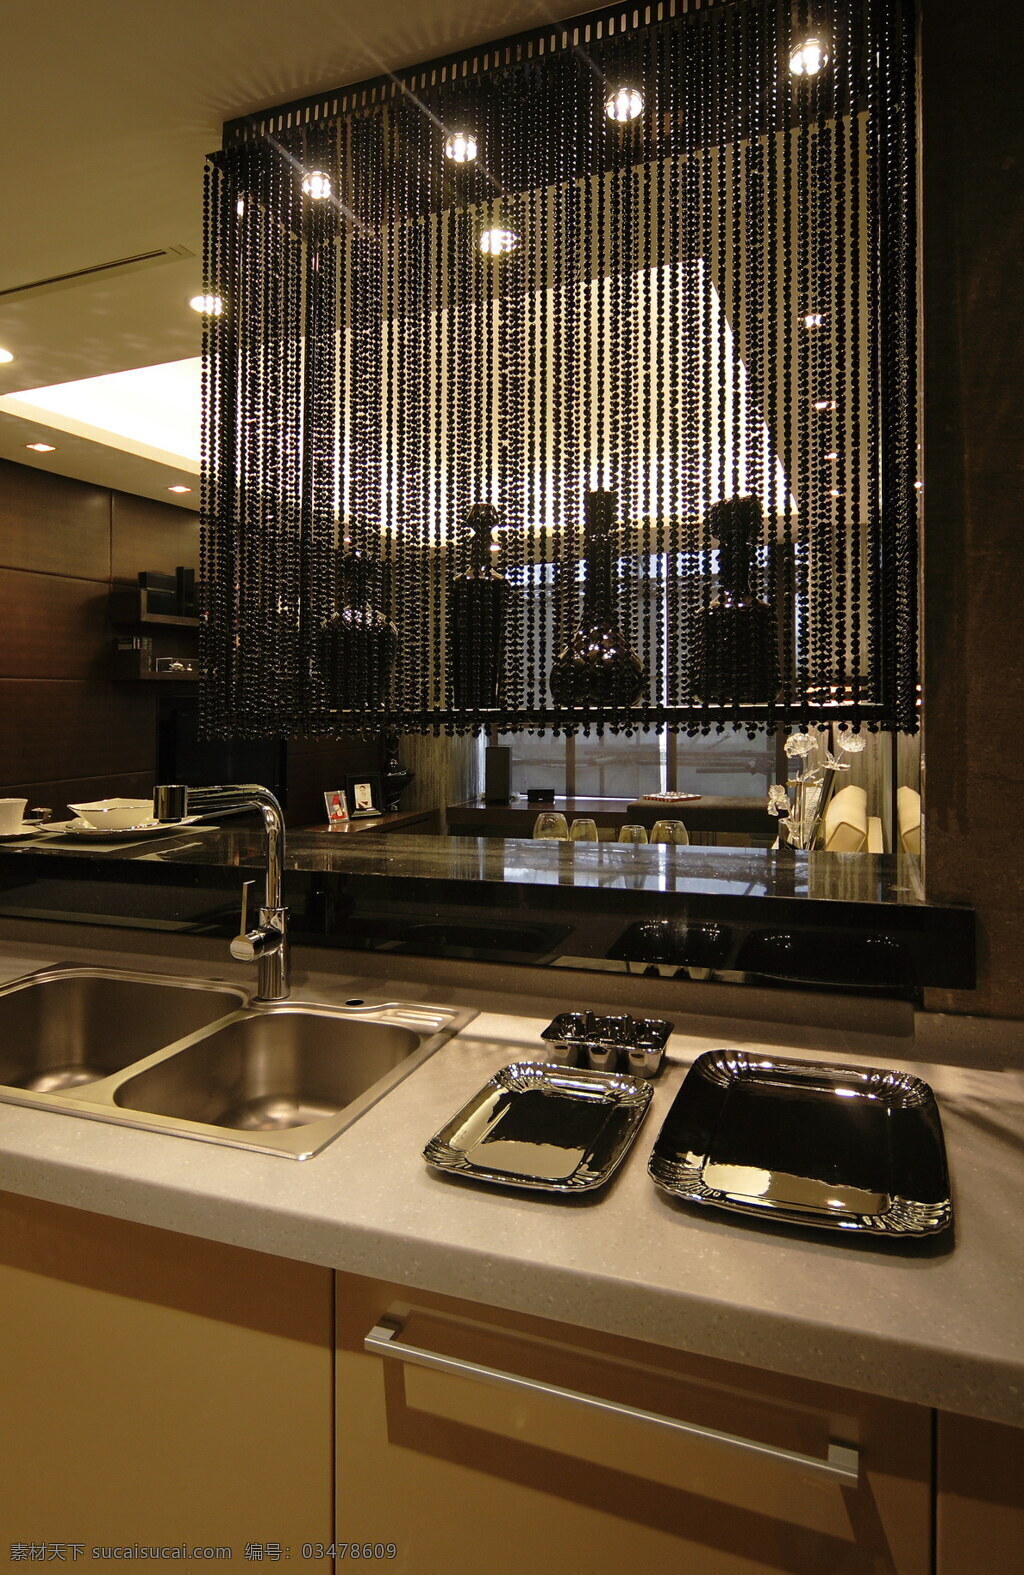 简约 风 室内设计 厨房 洗菜池 效果图 现代简约 料理台 深色 调 现代 家装